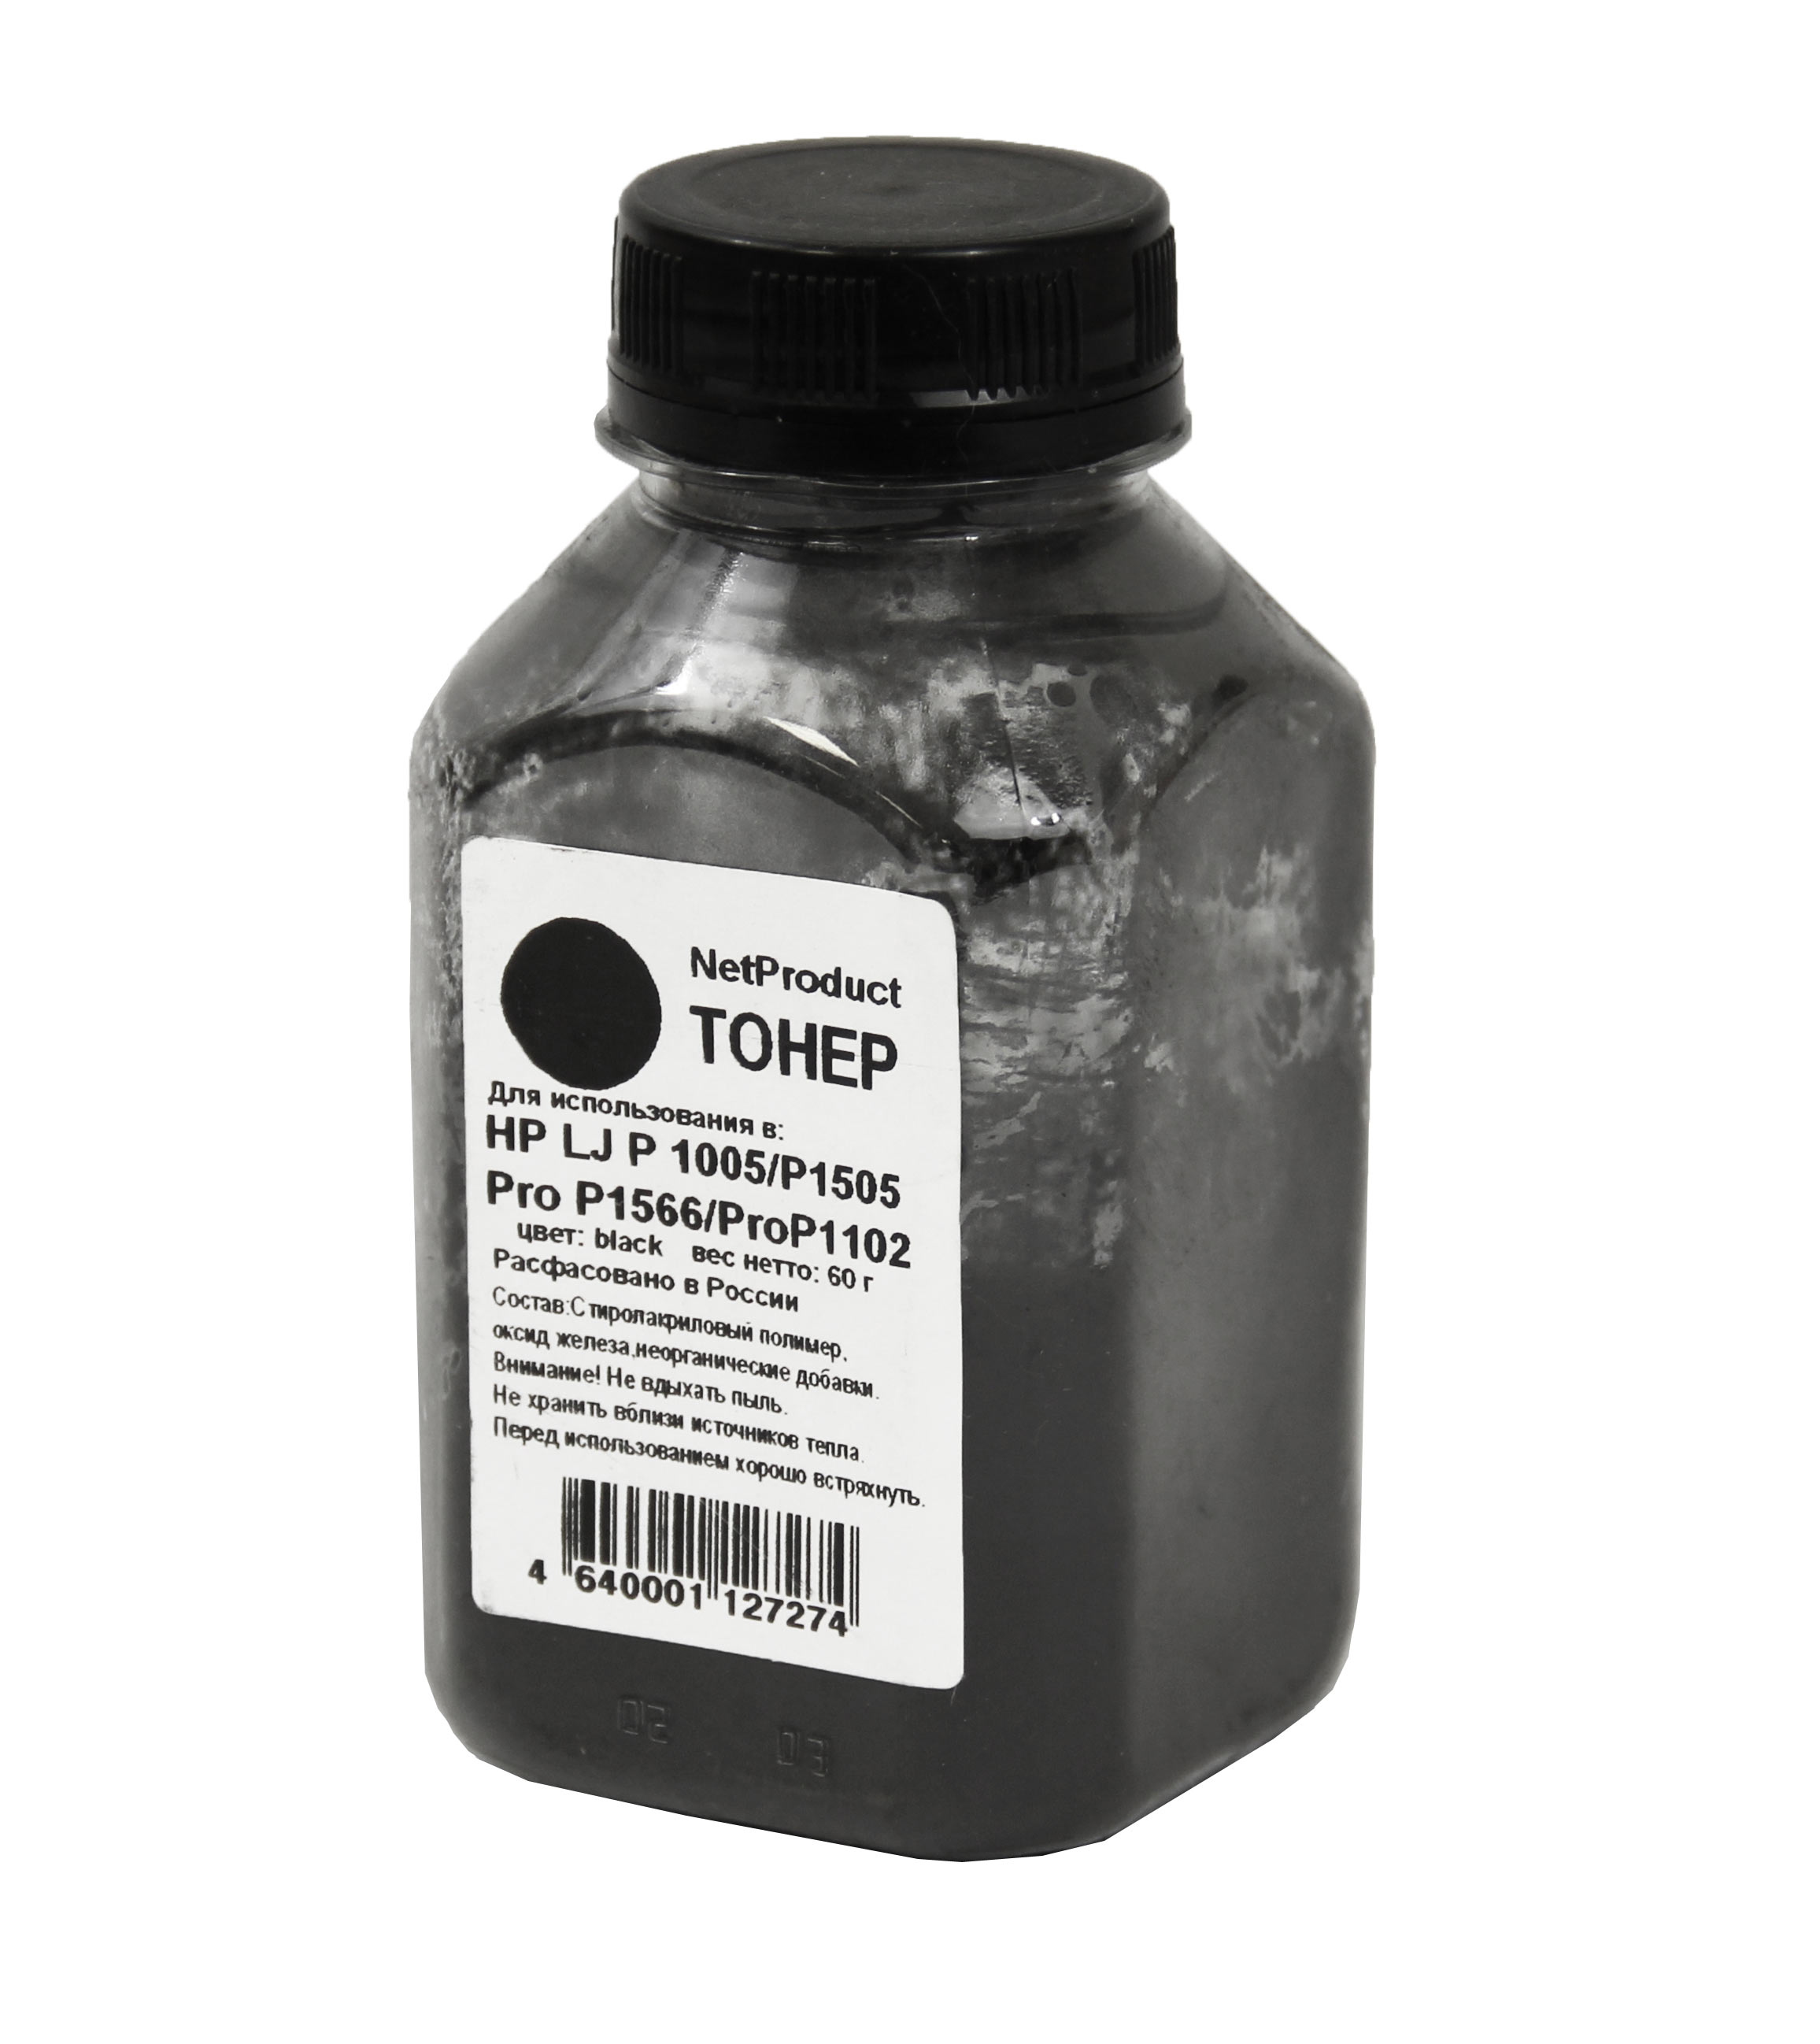 Тонер NetProduct, бутыль 60 г, черный, совместимый для Canon LJ P1005/1505, Pro P1566/1102 (2010408502)